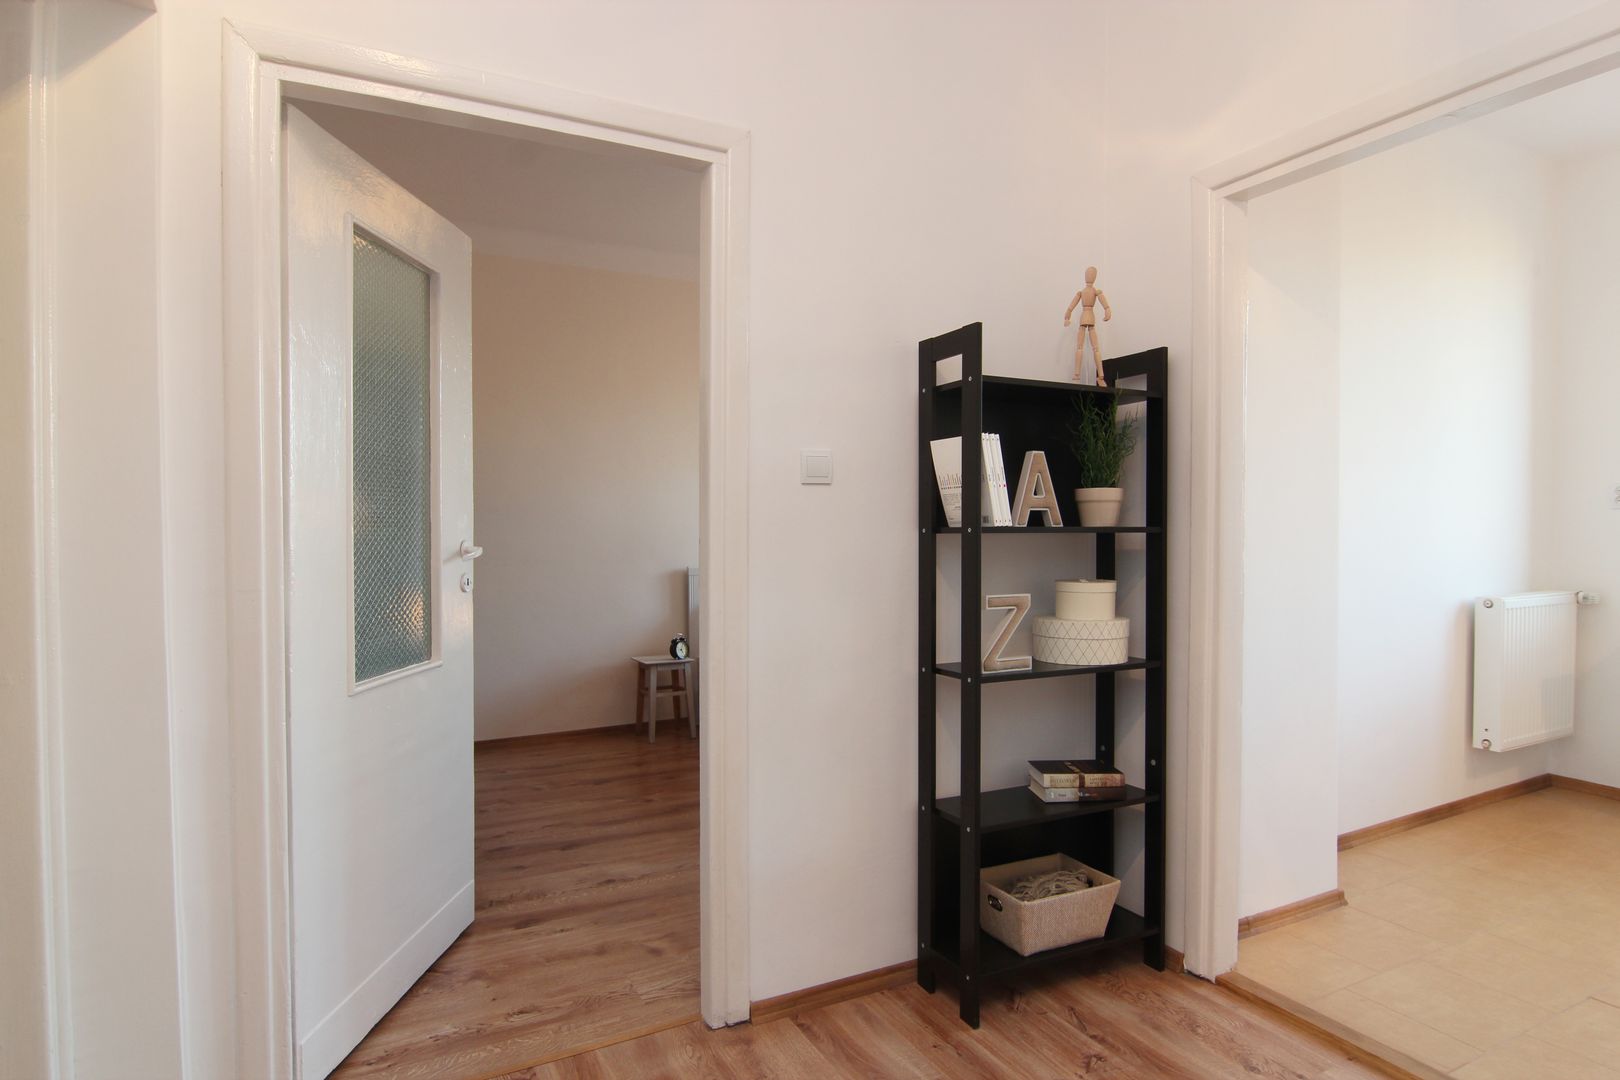 HOME STAGING MIESZKANIA 52M² NA SPRZEDAŻ, Better Home Interior Design Better Home Interior Design